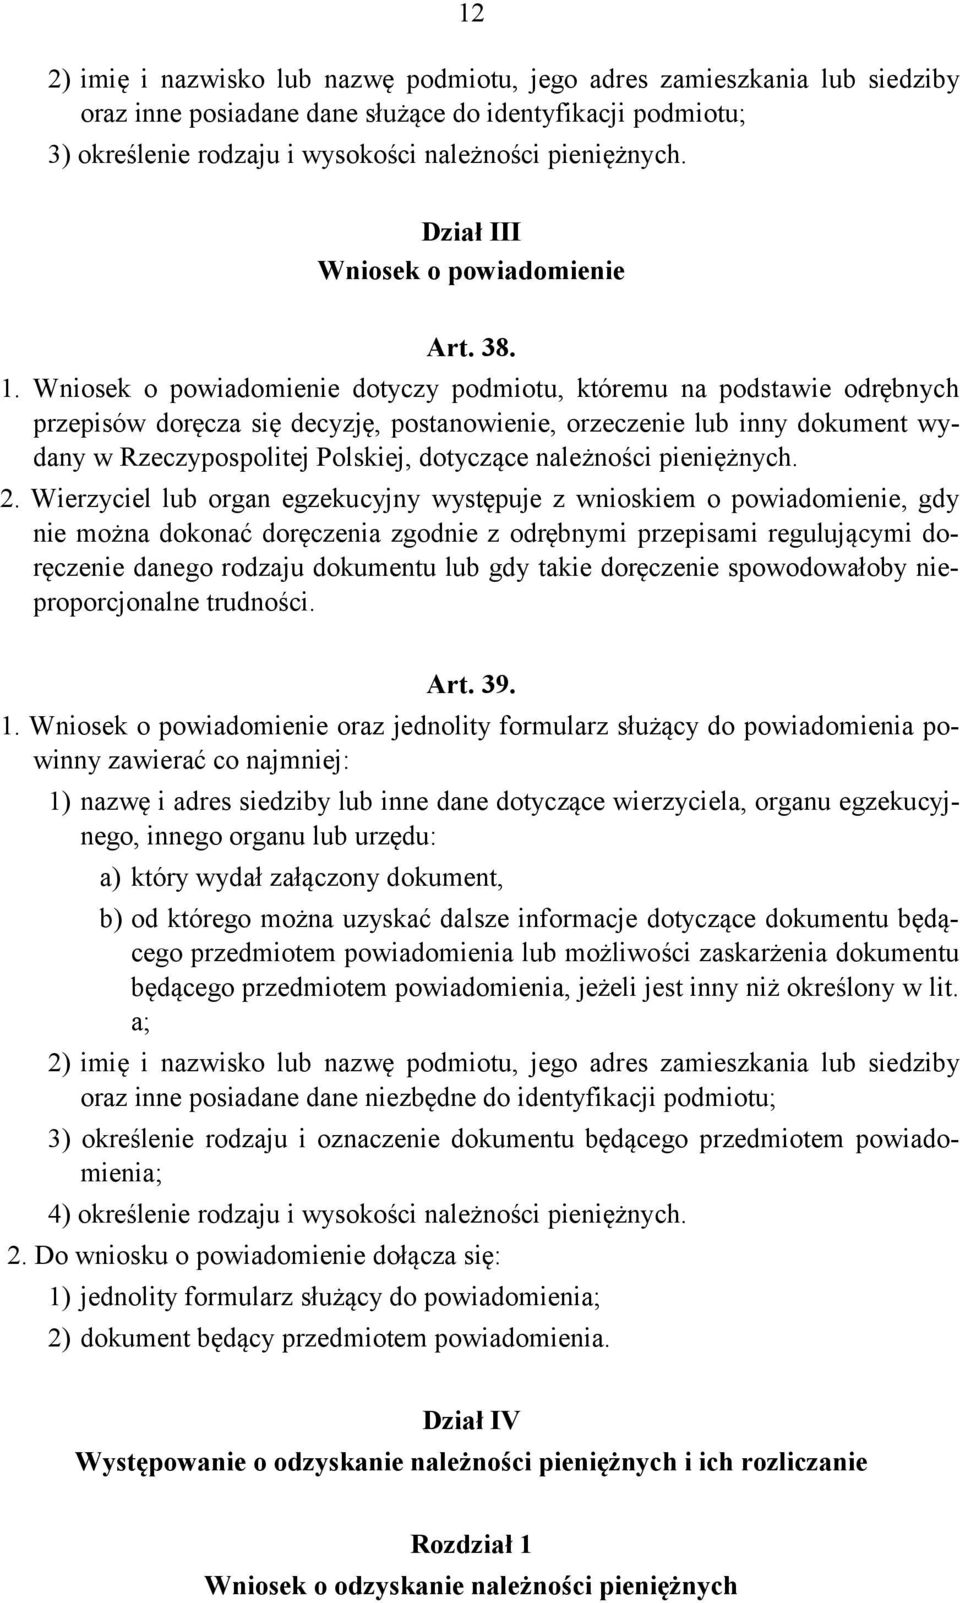 Wniosek o powiadomienie dotyczy podmiotu, któremu na podstawie odrębnych przepisów doręcza się decyzję, postanowienie, orzeczenie lub inny dokument wydany w Rzeczypospolitej Polskiej, dotyczące